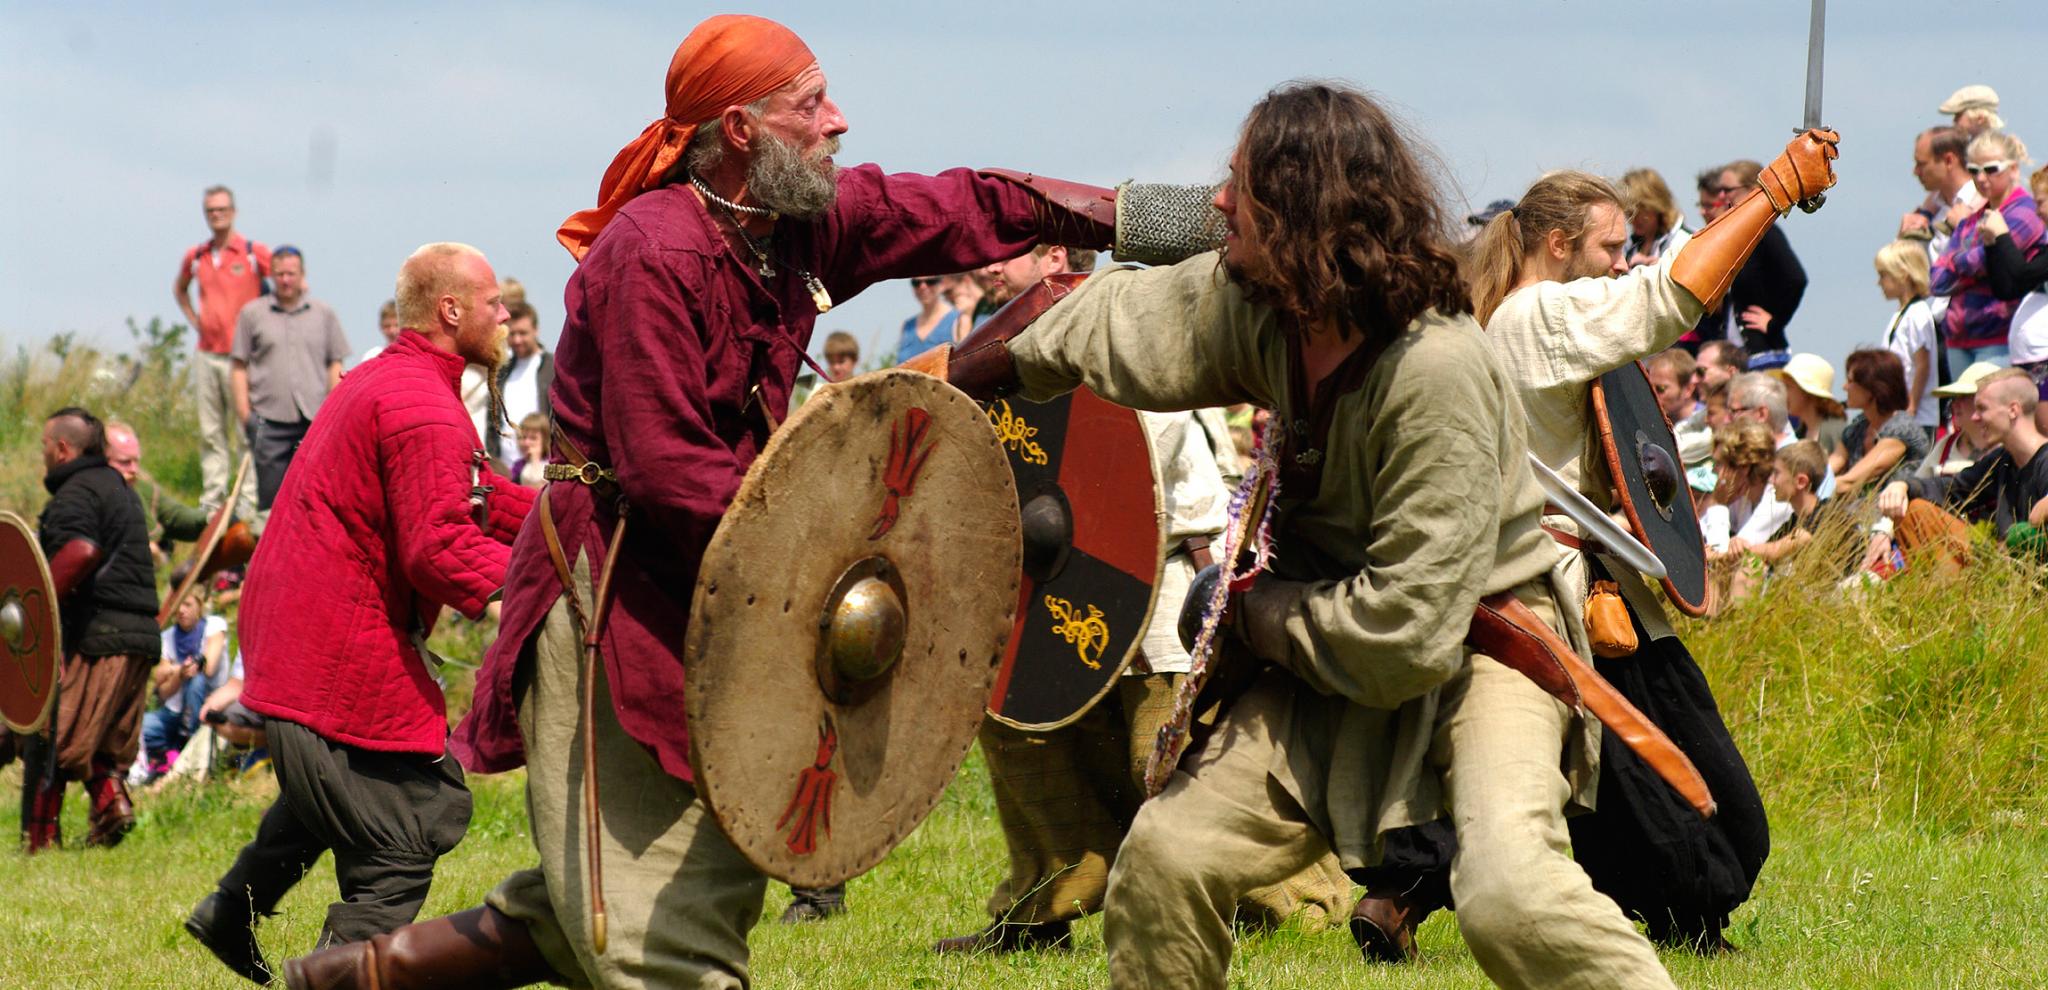 Vikingar med svärd och sköldar rekonstruerar en vikingastrid